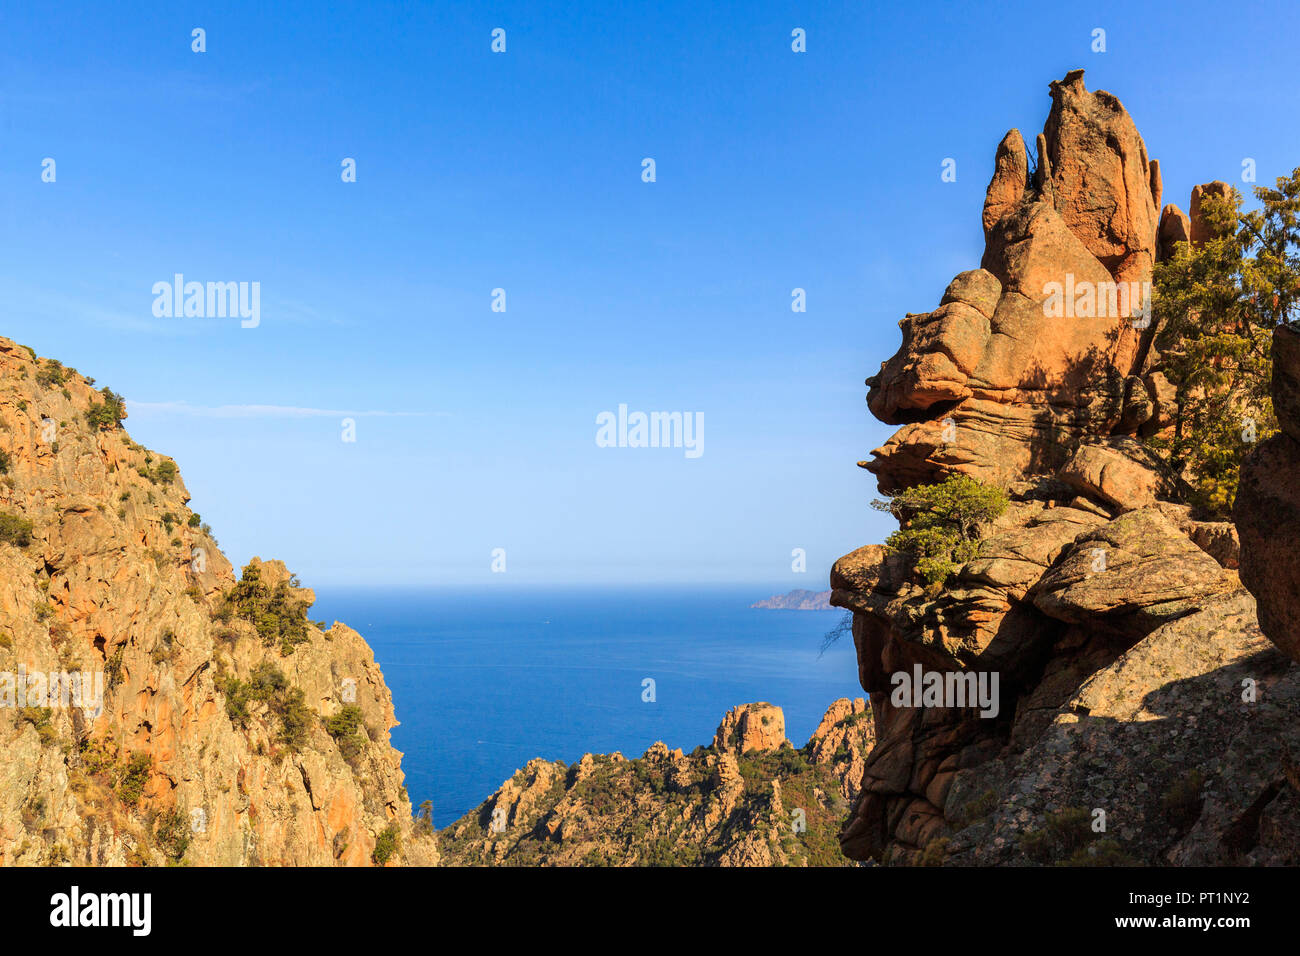 Les roches rouges des Calanques de Piana di (Les calanques de Piana), golfe de Porto, Corse du Sud, France Banque D'Images